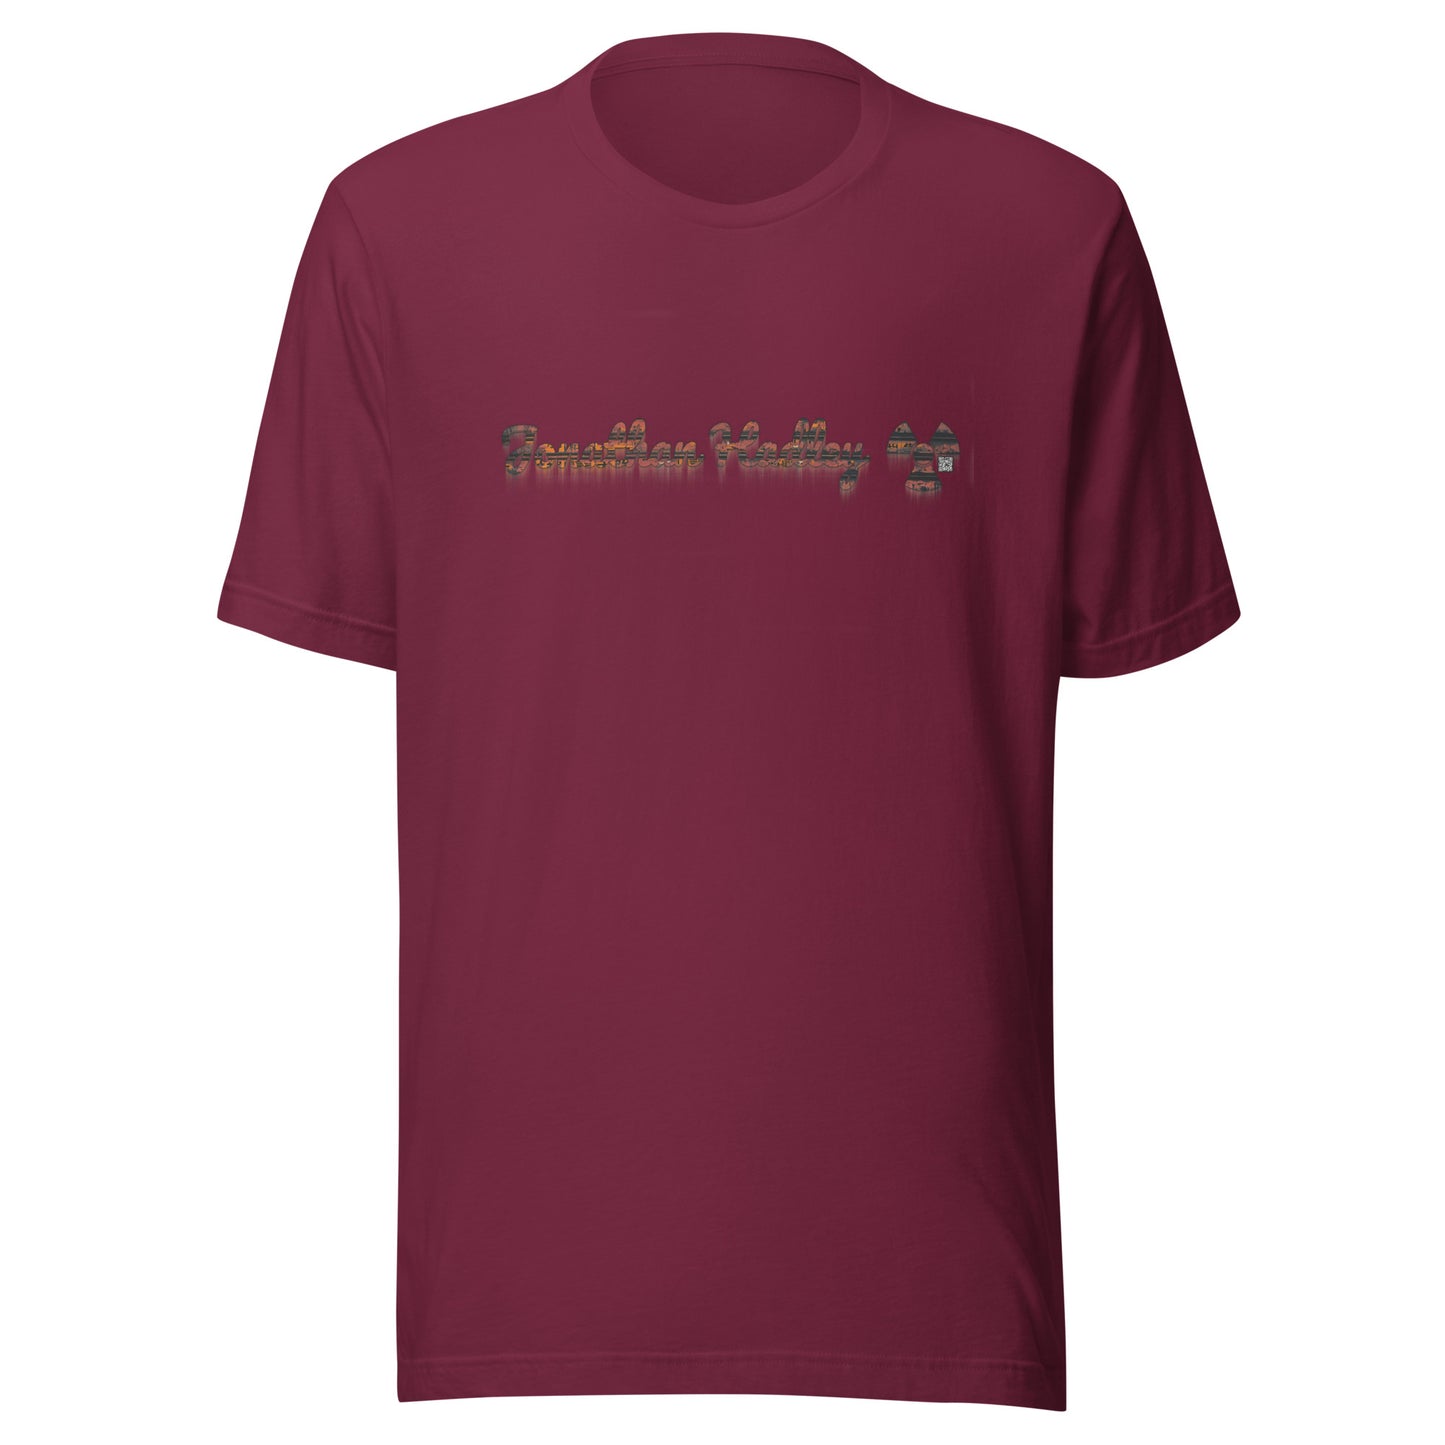 Jonathan Hadley Post Apocalyptic Rust T-Shirt